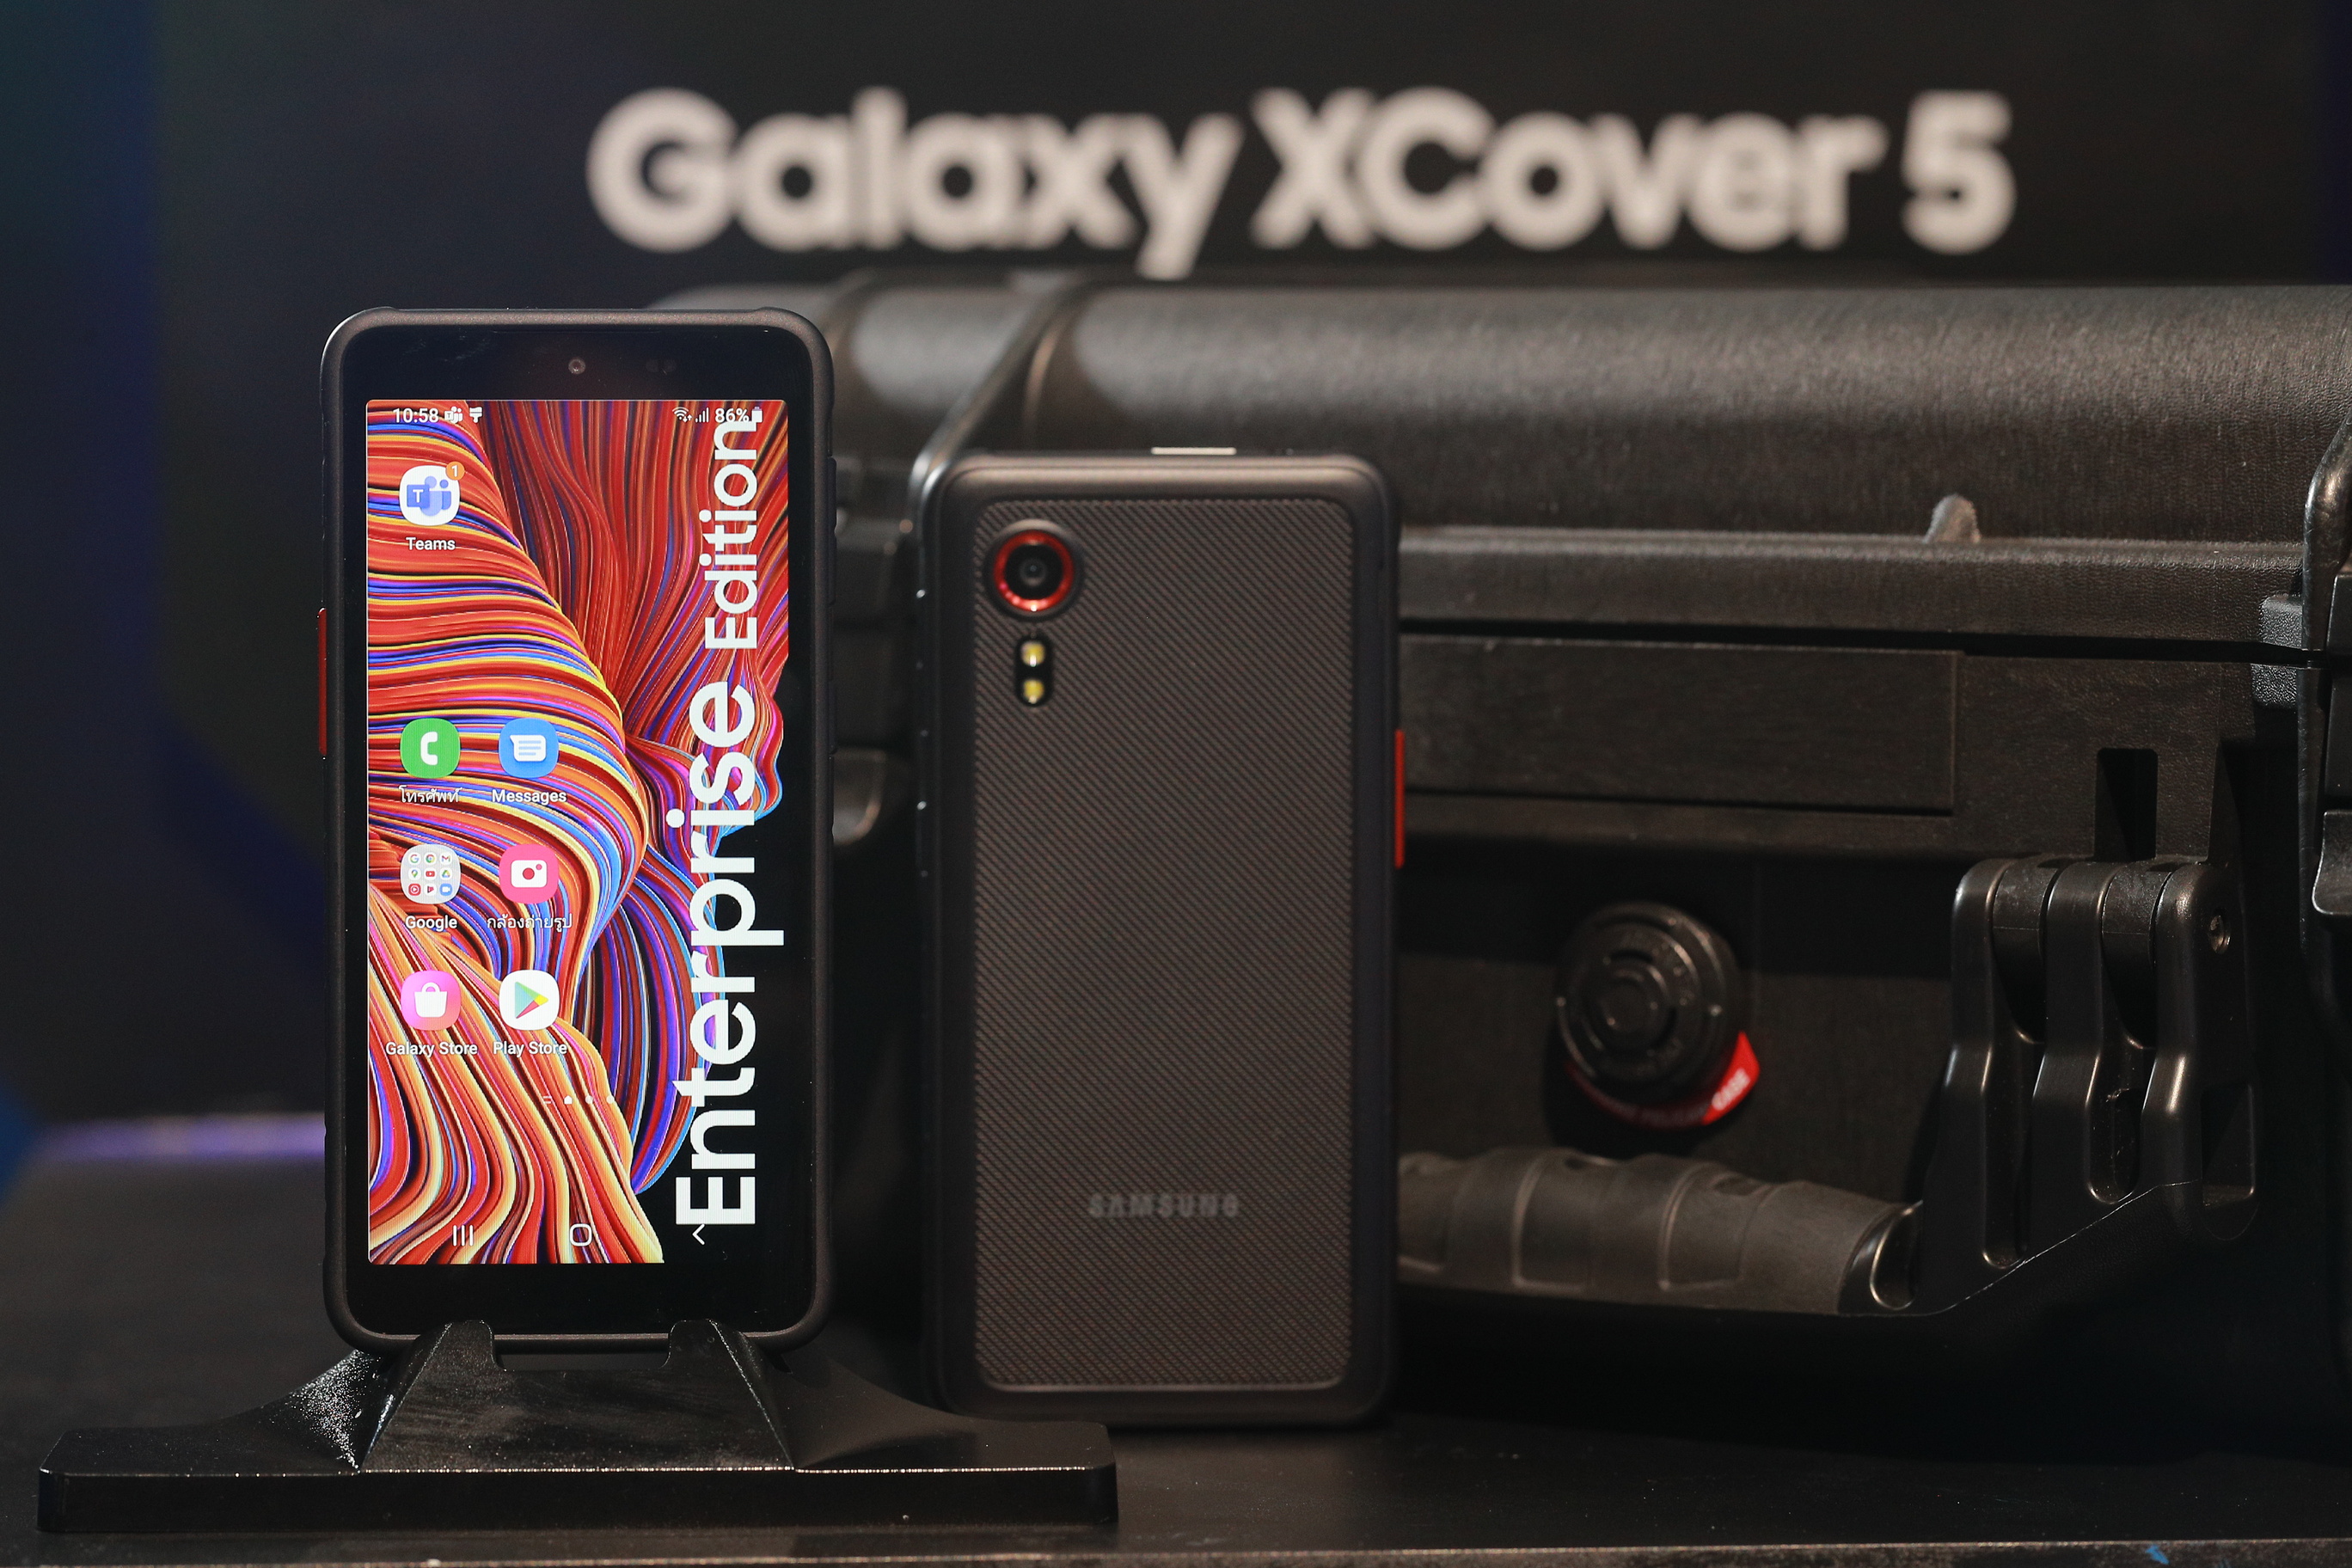 รู้จัก Galaxy XCover5 สมาร์ทโฟนกลุ่มธุรกิจลูกค้าองค์กร กับผลิตภัณฑ์ Rugged Device เพื่อธุรกิจในยุคดิจิทัล